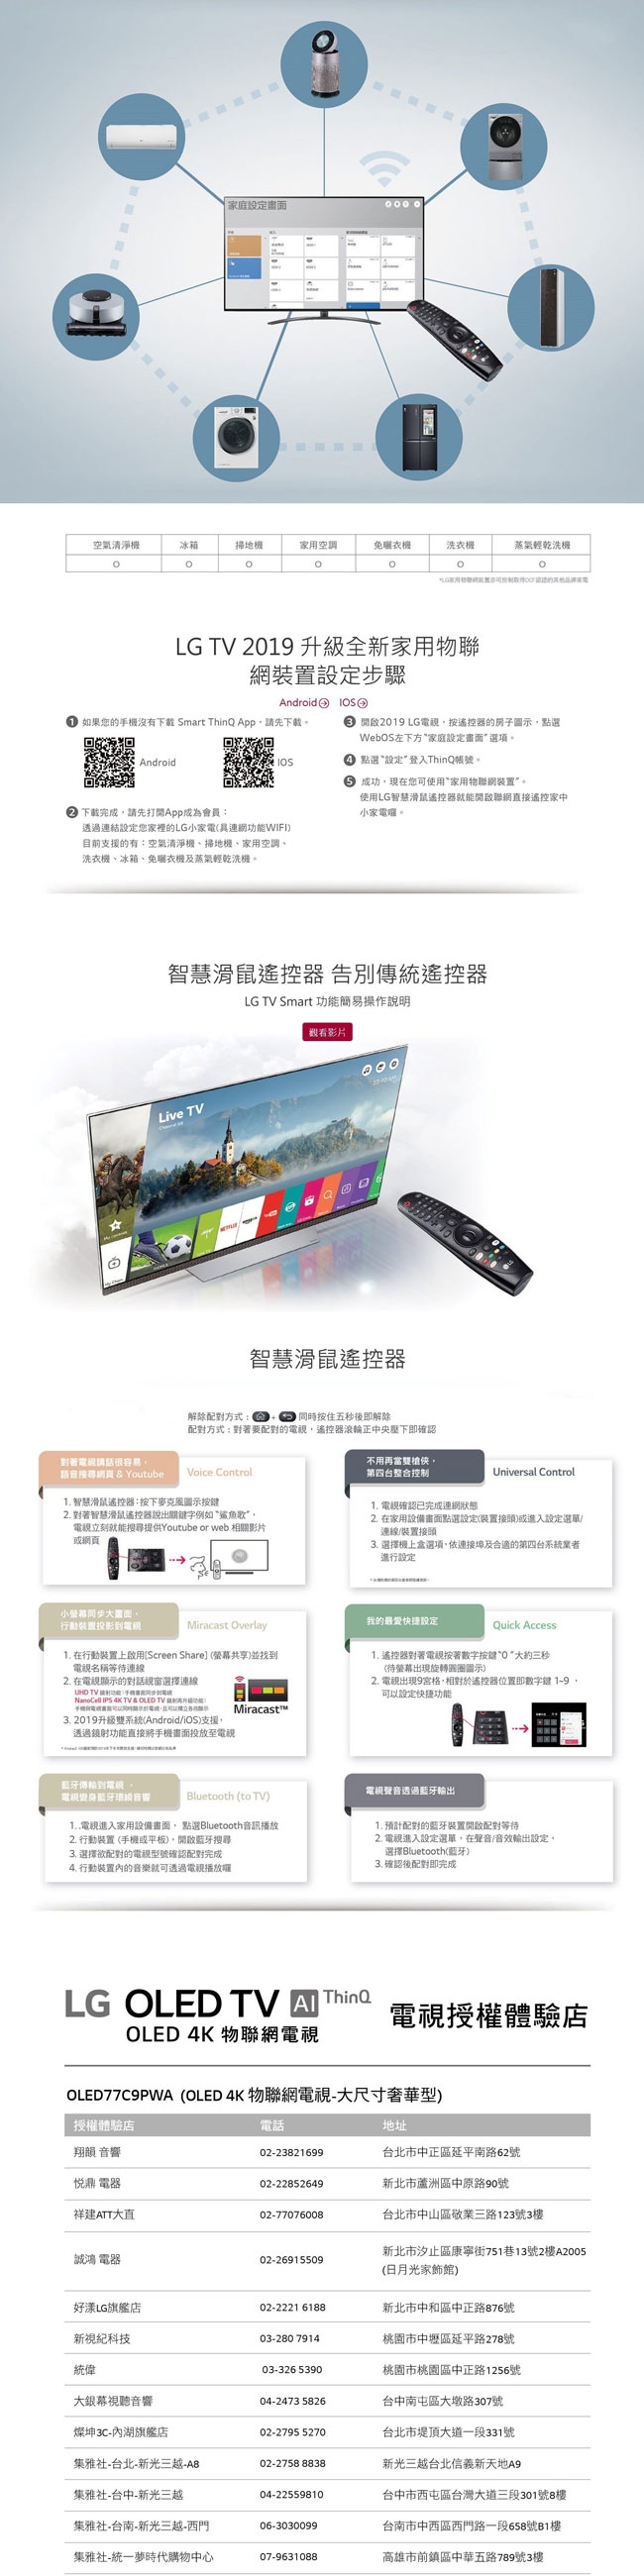 【預購商品】LG樂金 77型OLED 4K物聯網電視 OLED77C9PWA